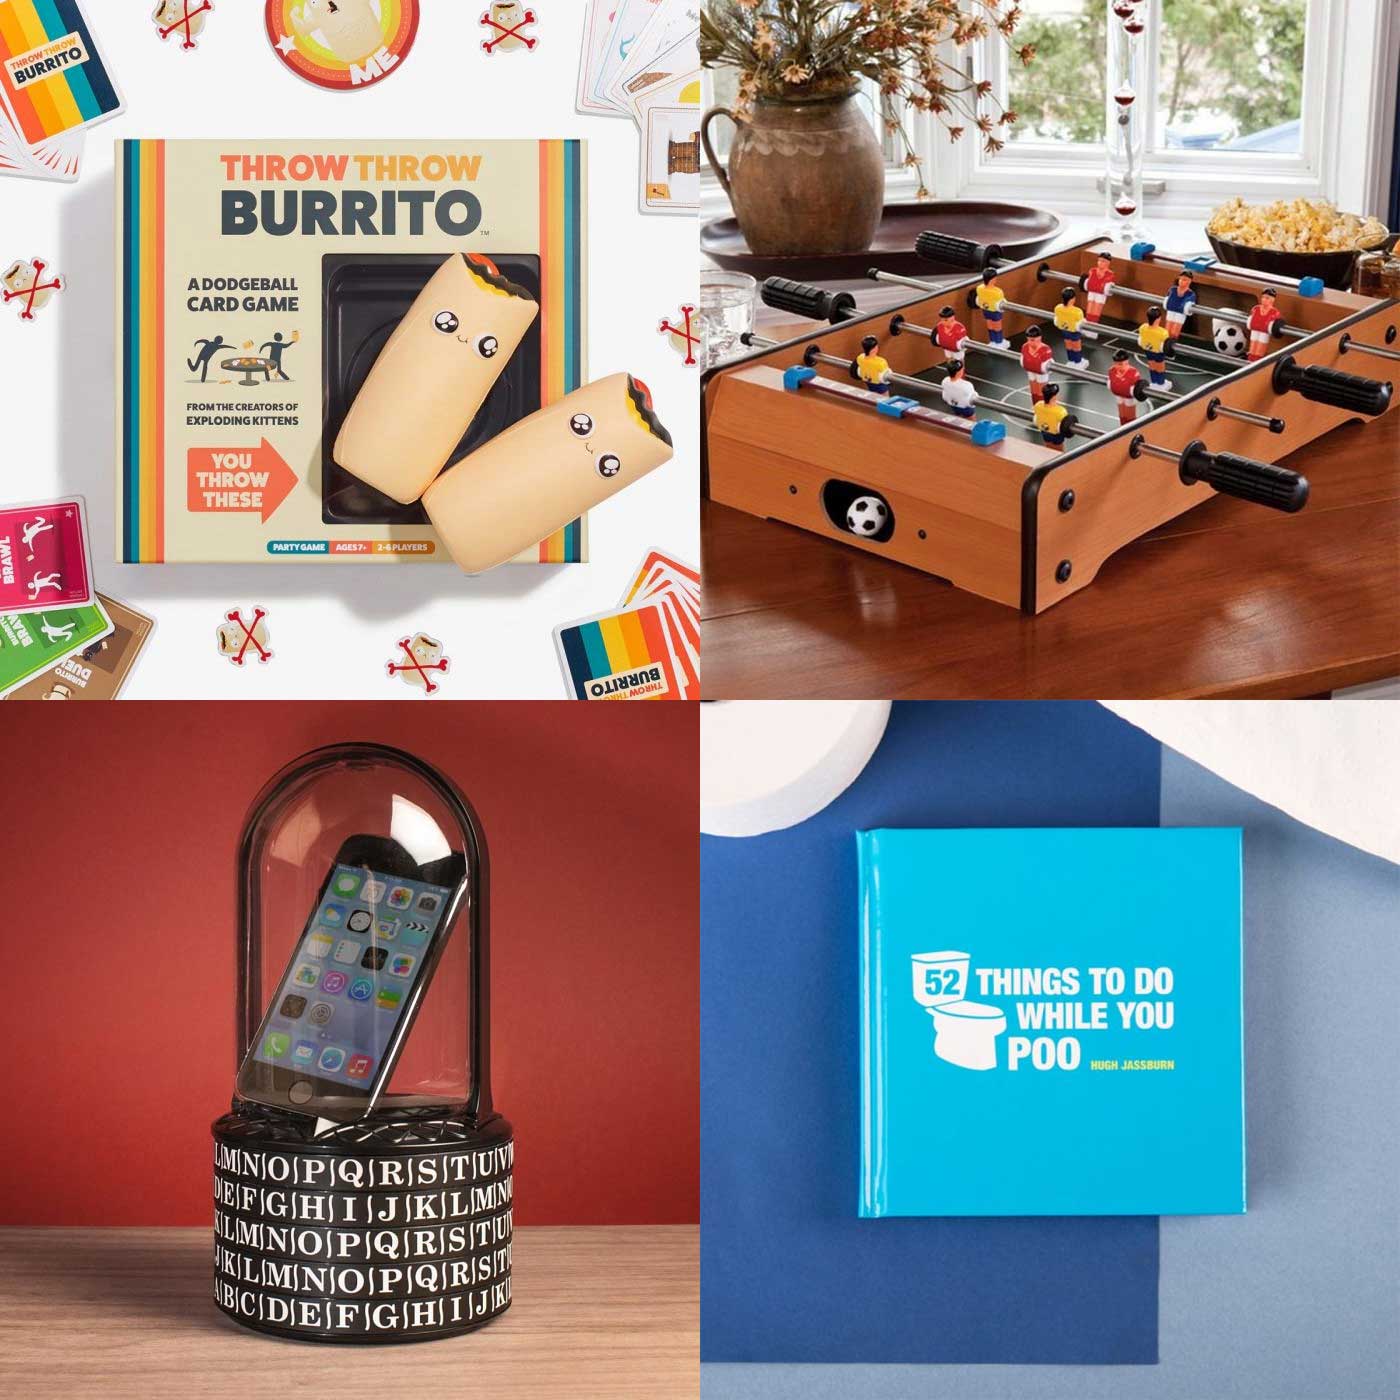 Geschenke-Guide: Ausgefallene Ideen für Weihnachten 2021 bei radbag radbag-geschenke-guide-2021-02 